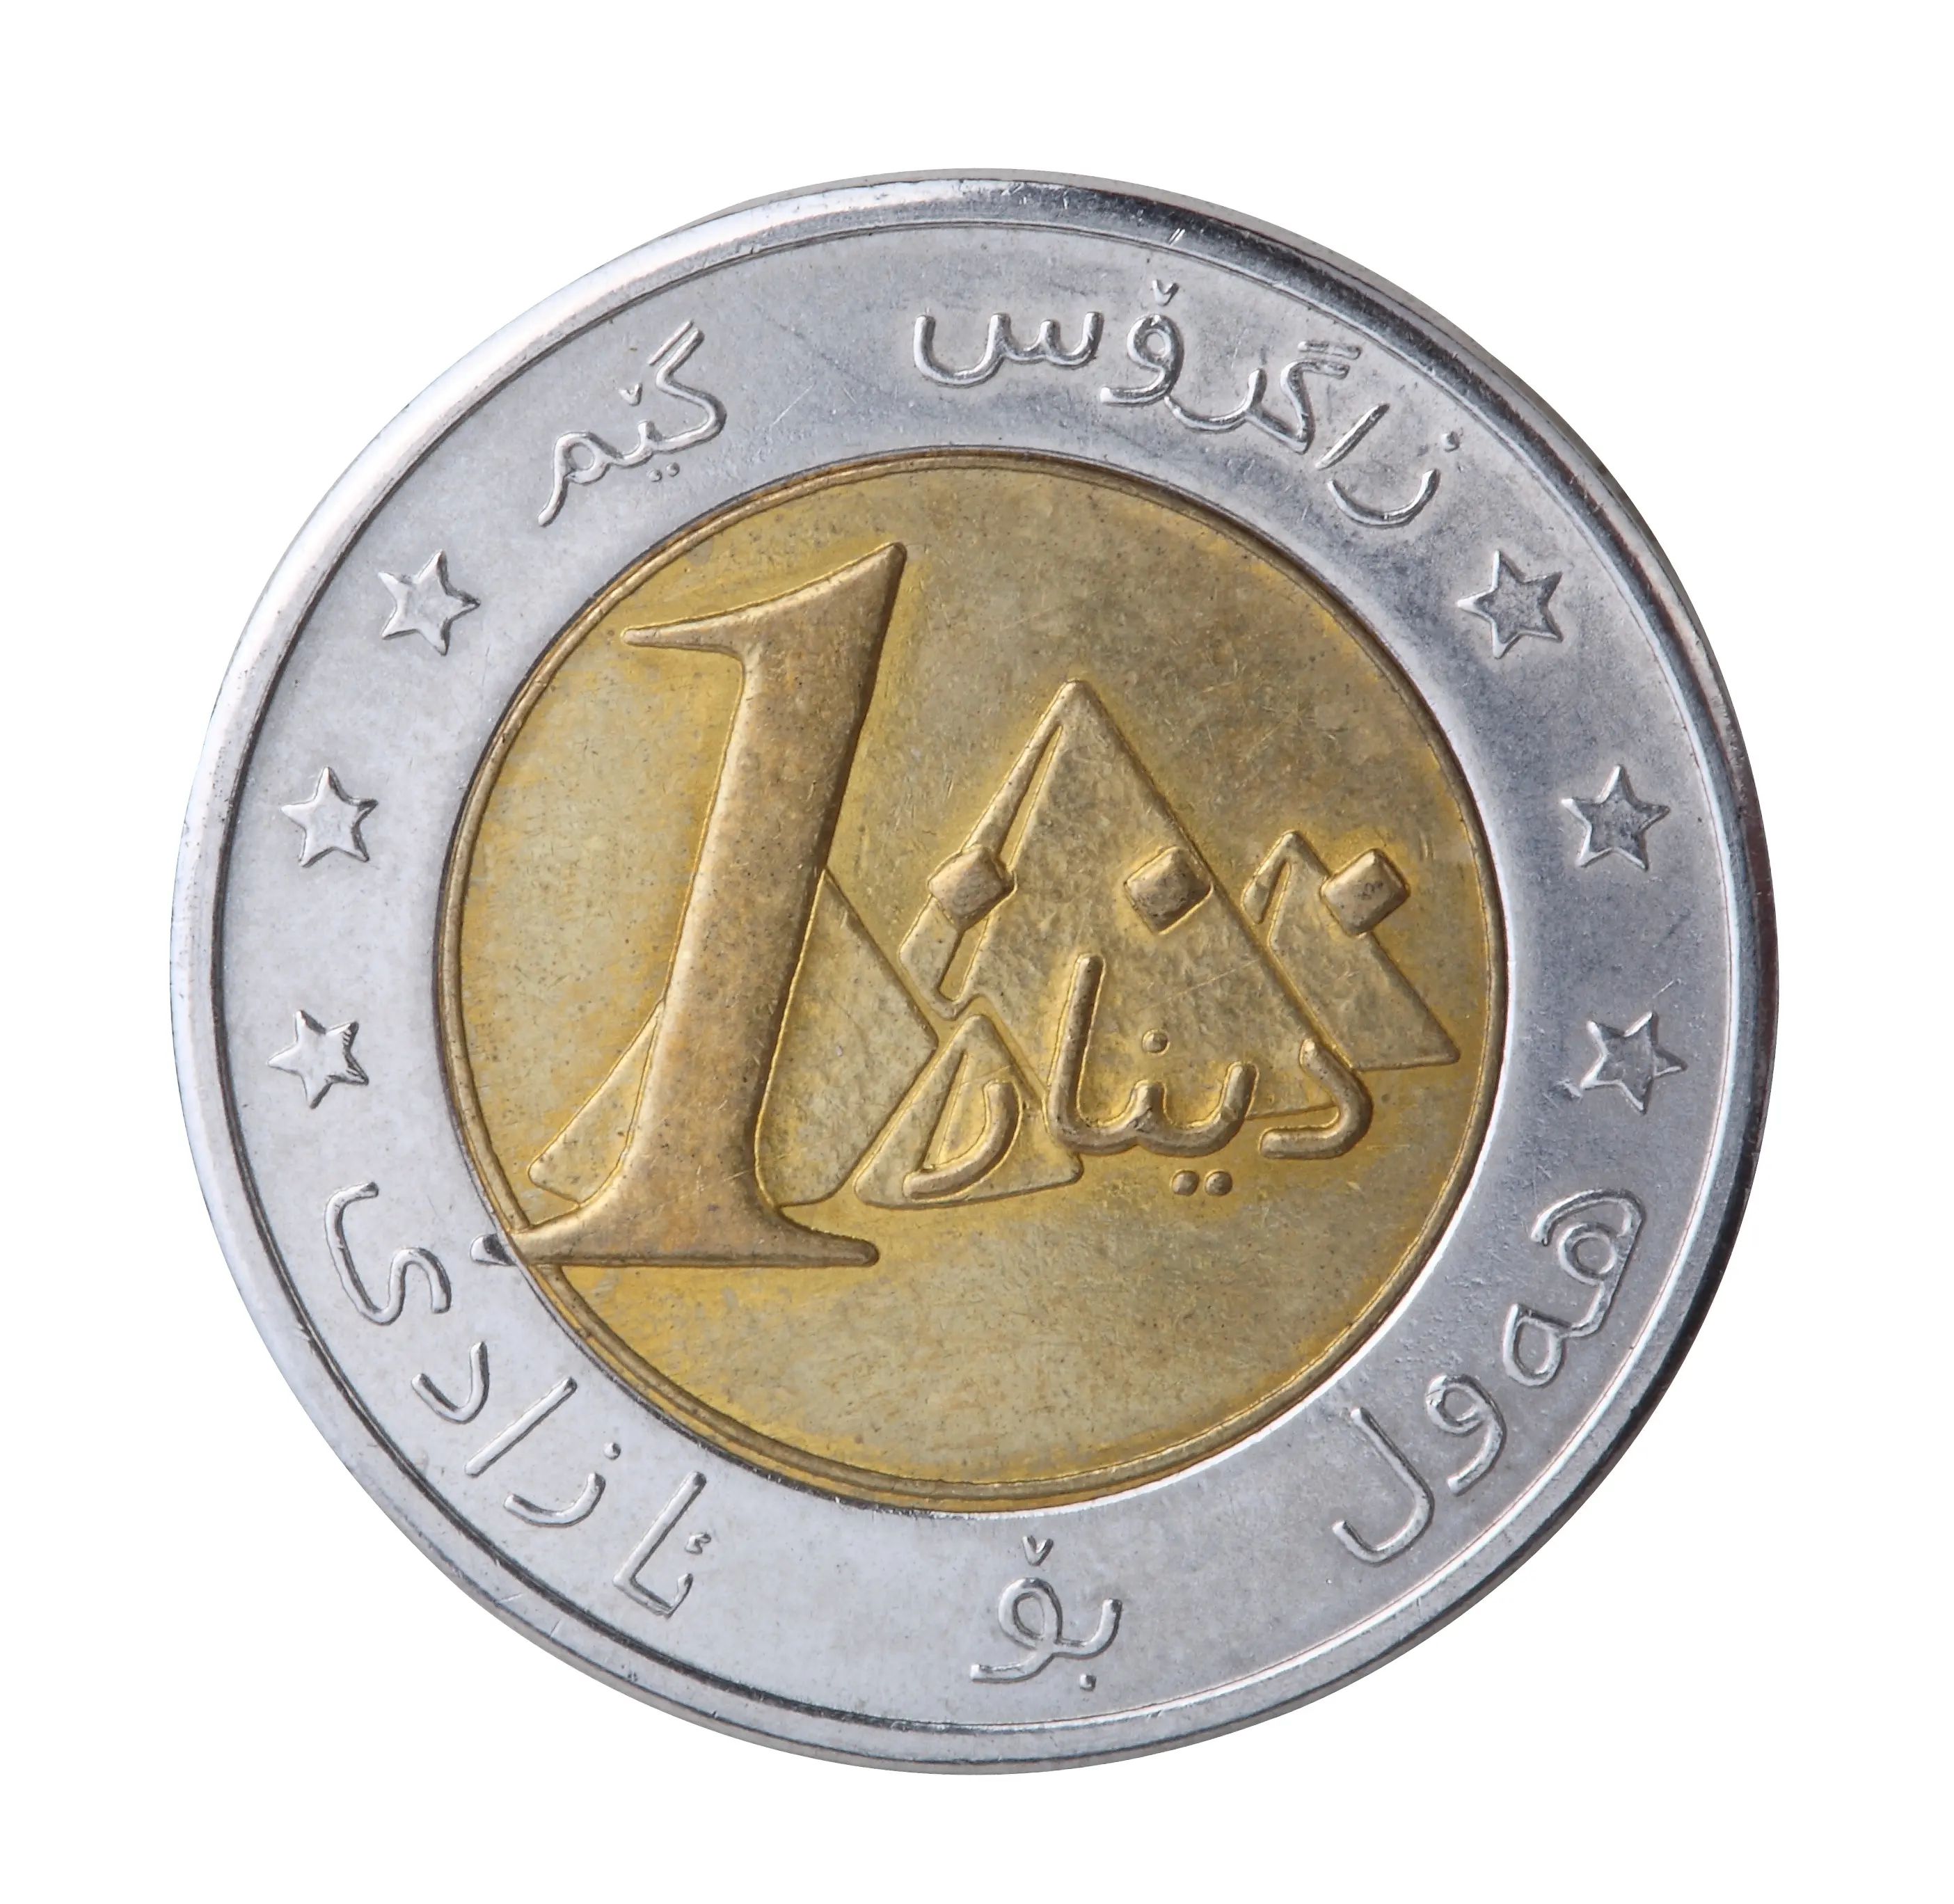 Réplica de monedas metal 2 euros producto más nuevo